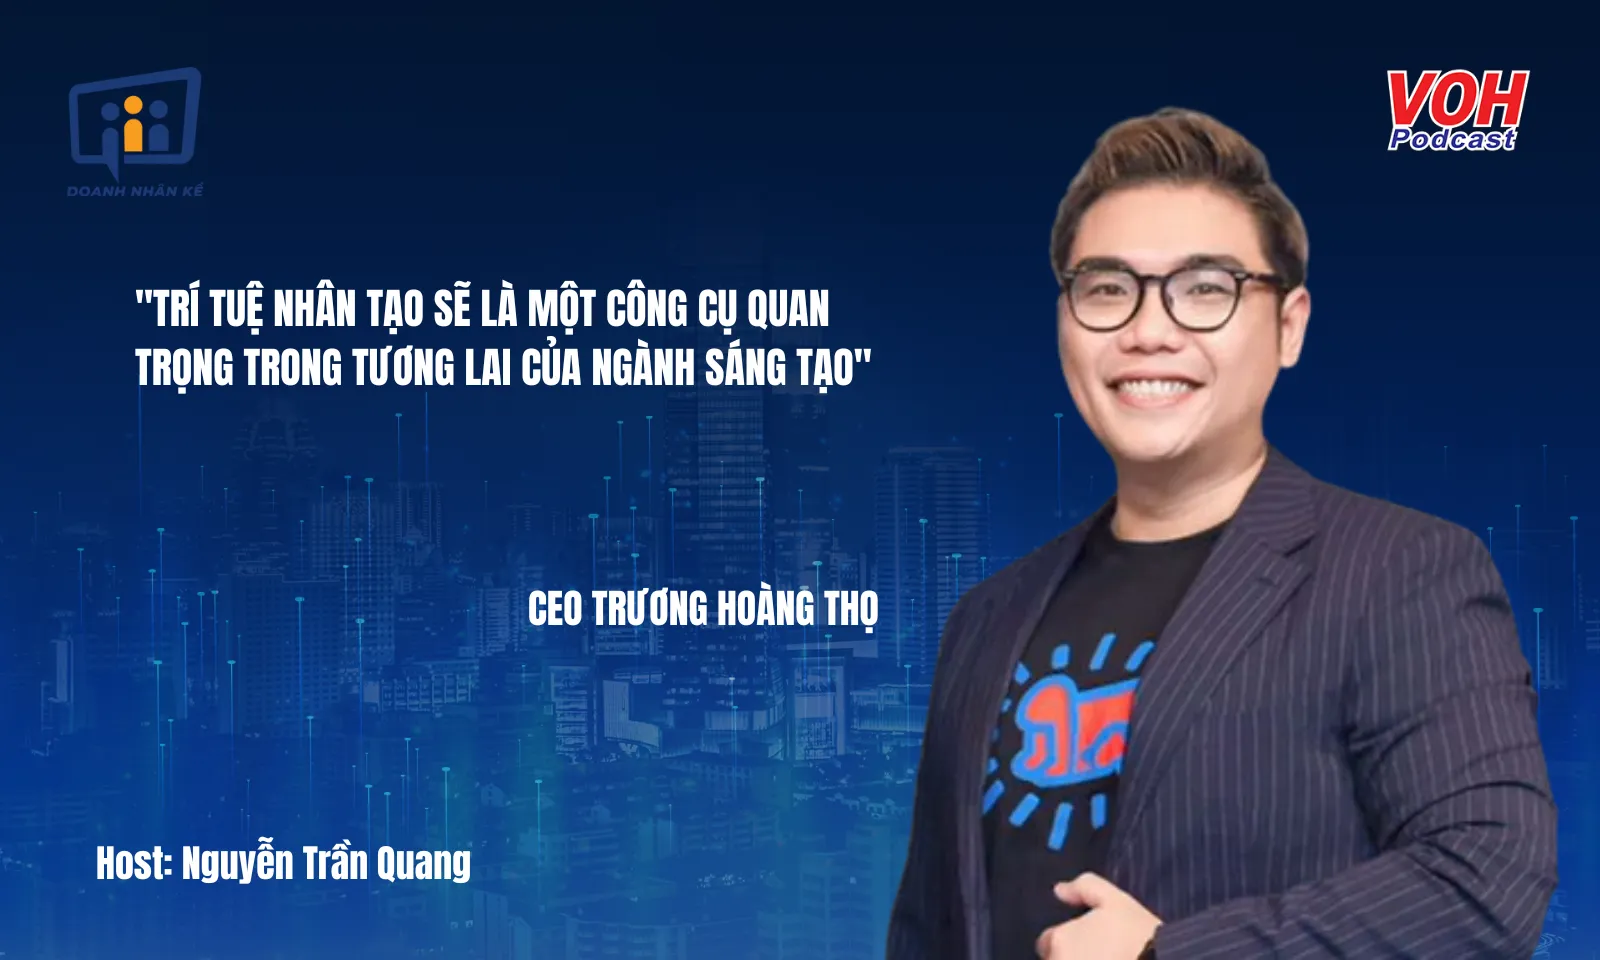 CEO Trương Hoàng Thọ: Trí tuệ nhân tạo (AI) - Chìa khóa cho sự sáng tạo doanh nghiệp | DNK #119